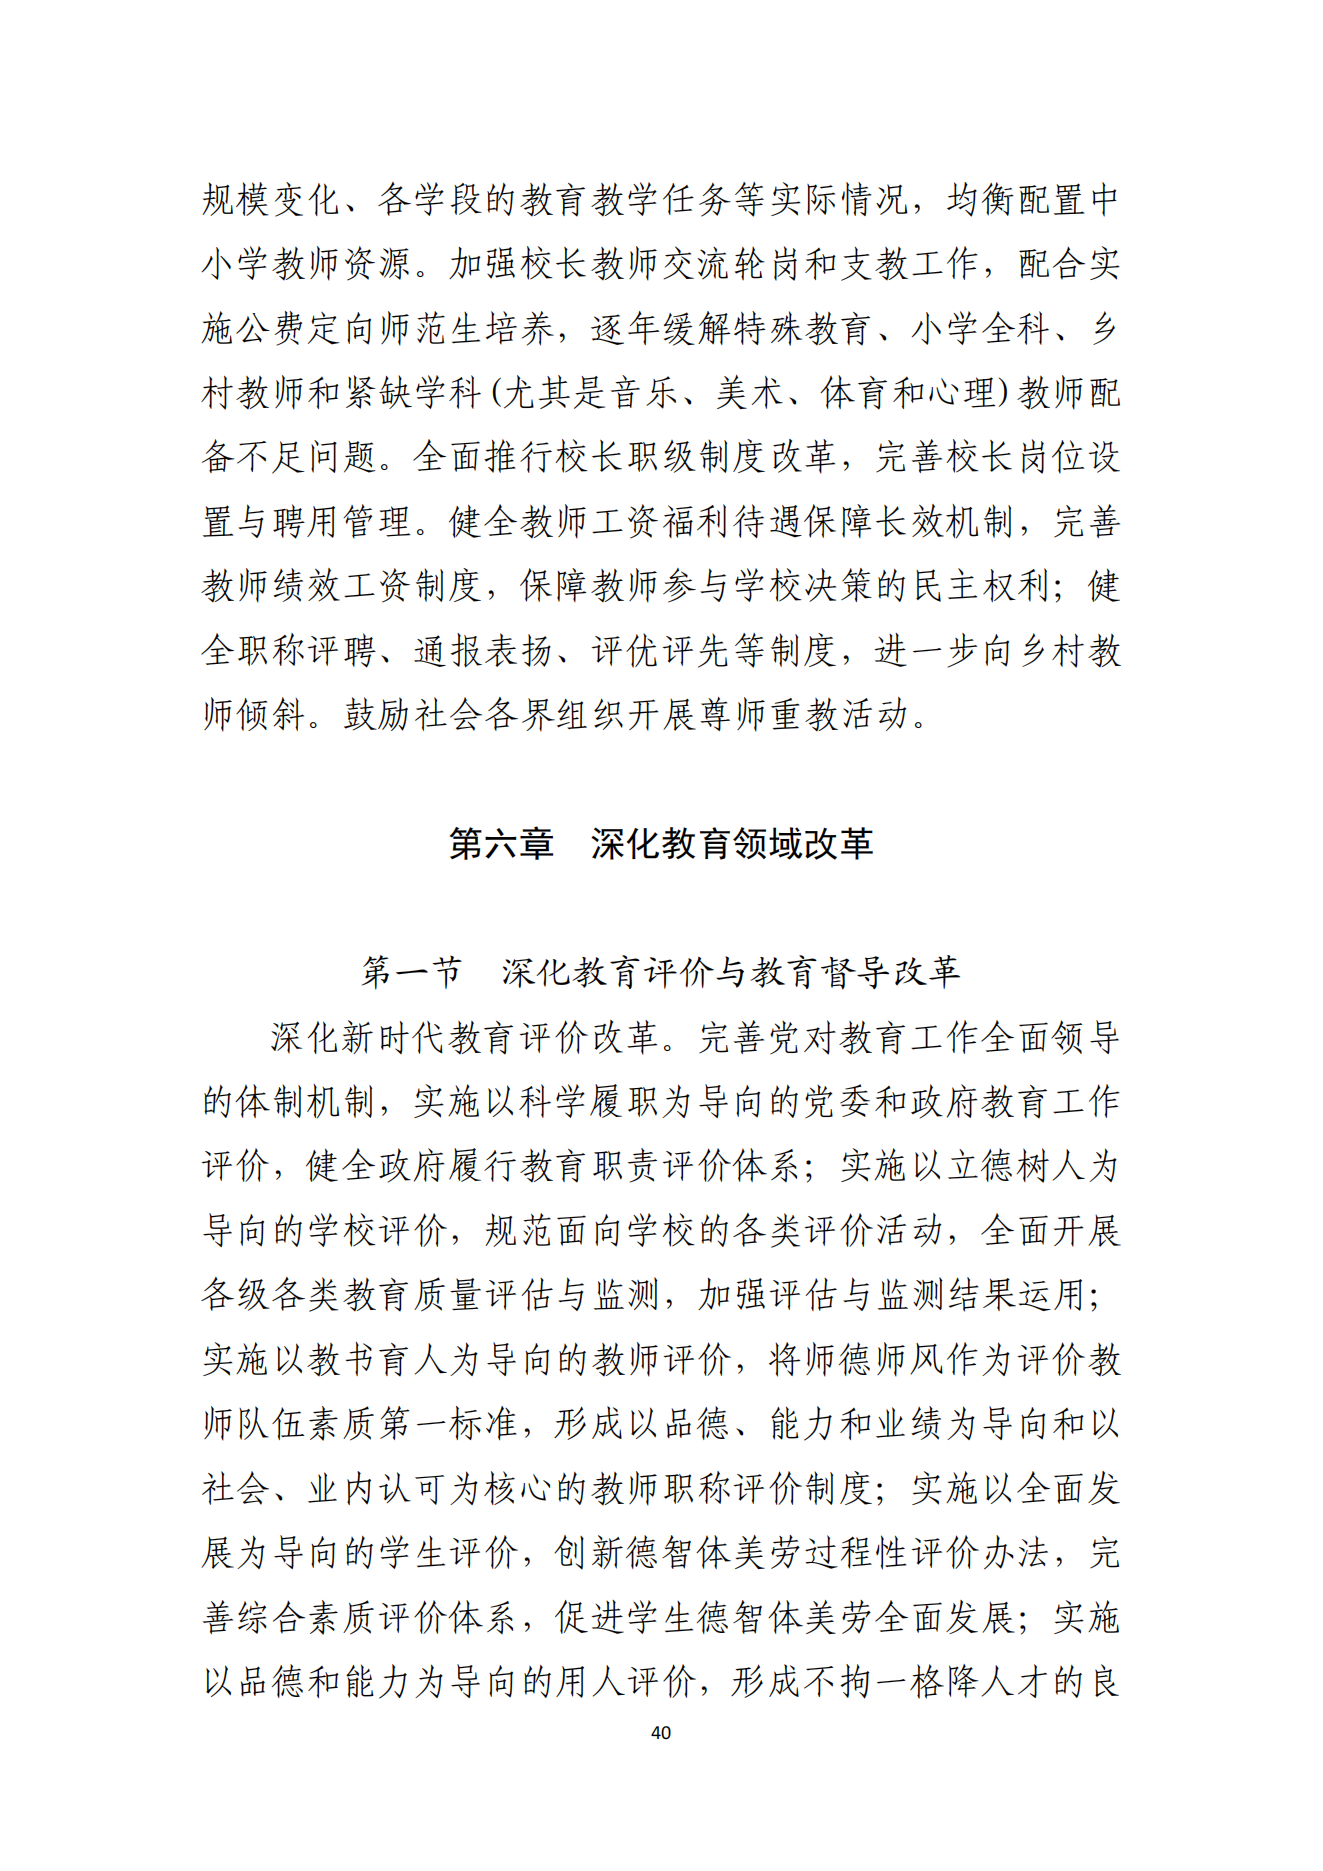 湛江市人民政府办公室关于印发湛江市教育发展“十四五”规划的通知_39.png